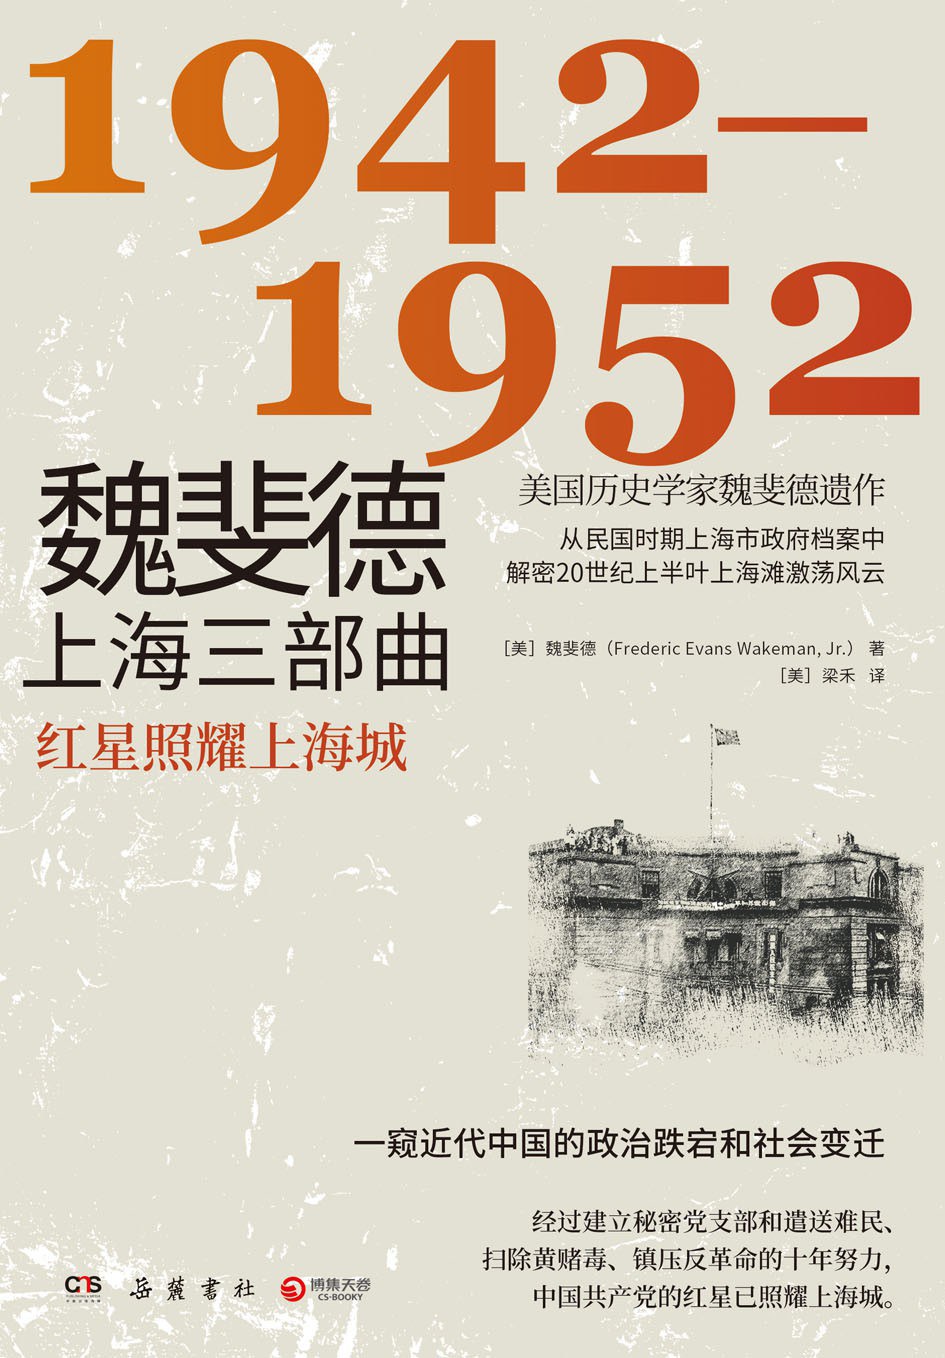 魏斐德上海三部曲 1942-1952 红星照耀上海城